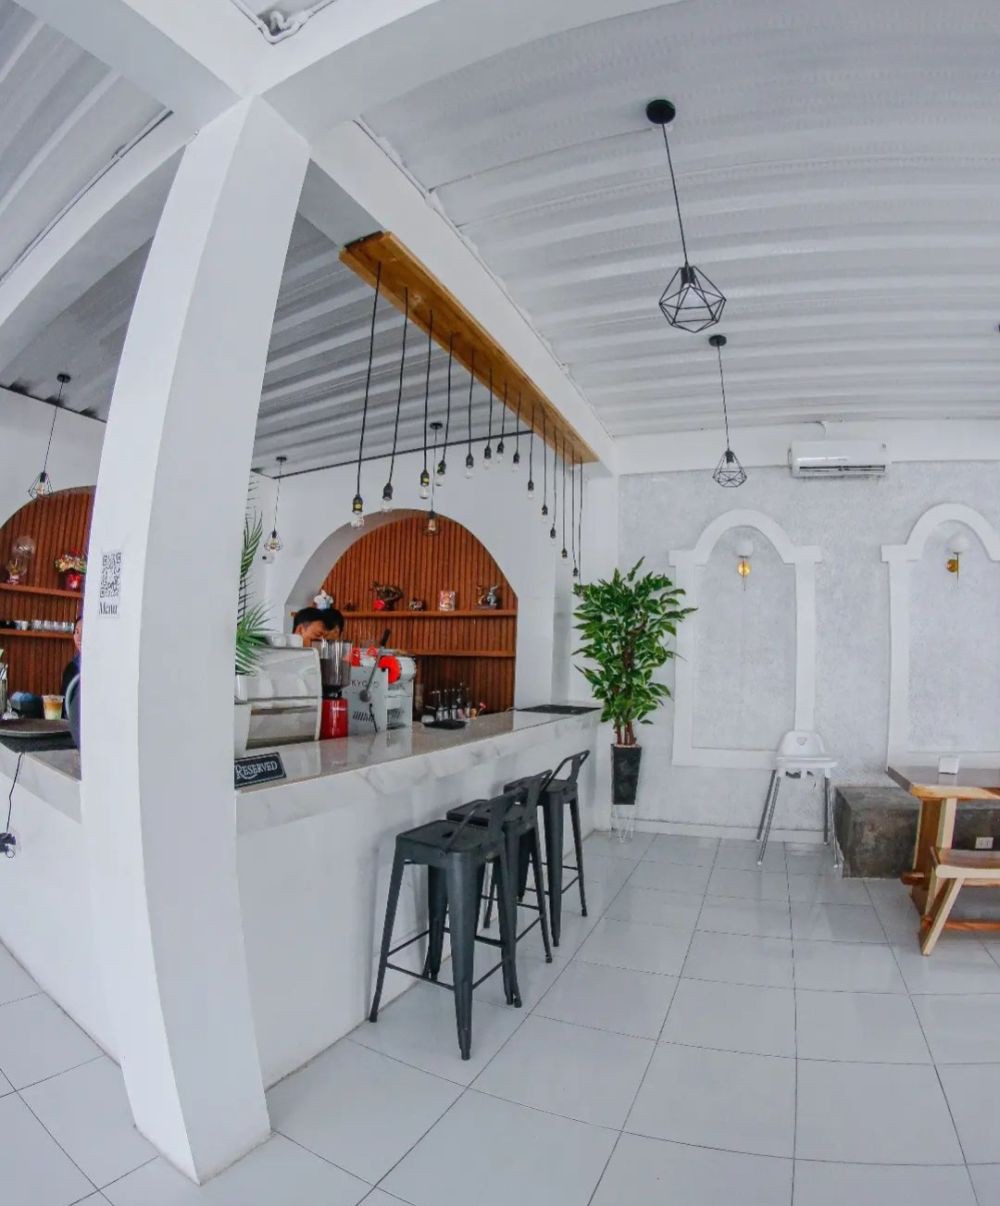 Rekomendasi Coffee Shop Murah Bandar Lampung, Tempatnya Cozy Abis